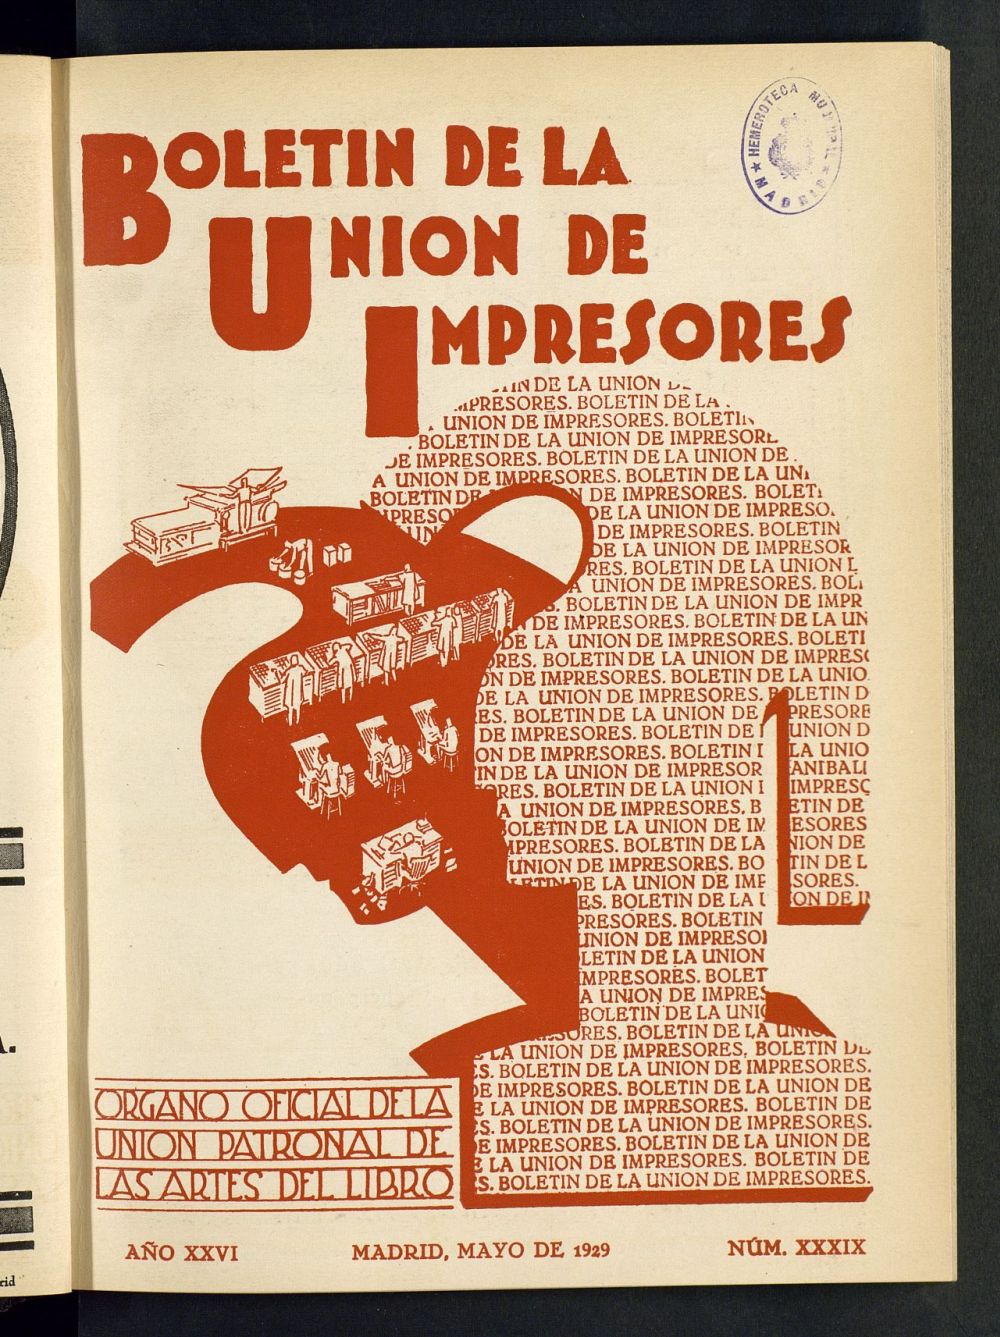 Boletn de la unin de impresores : rgano de la unin patronal de las artes del libro de mayo de 1929